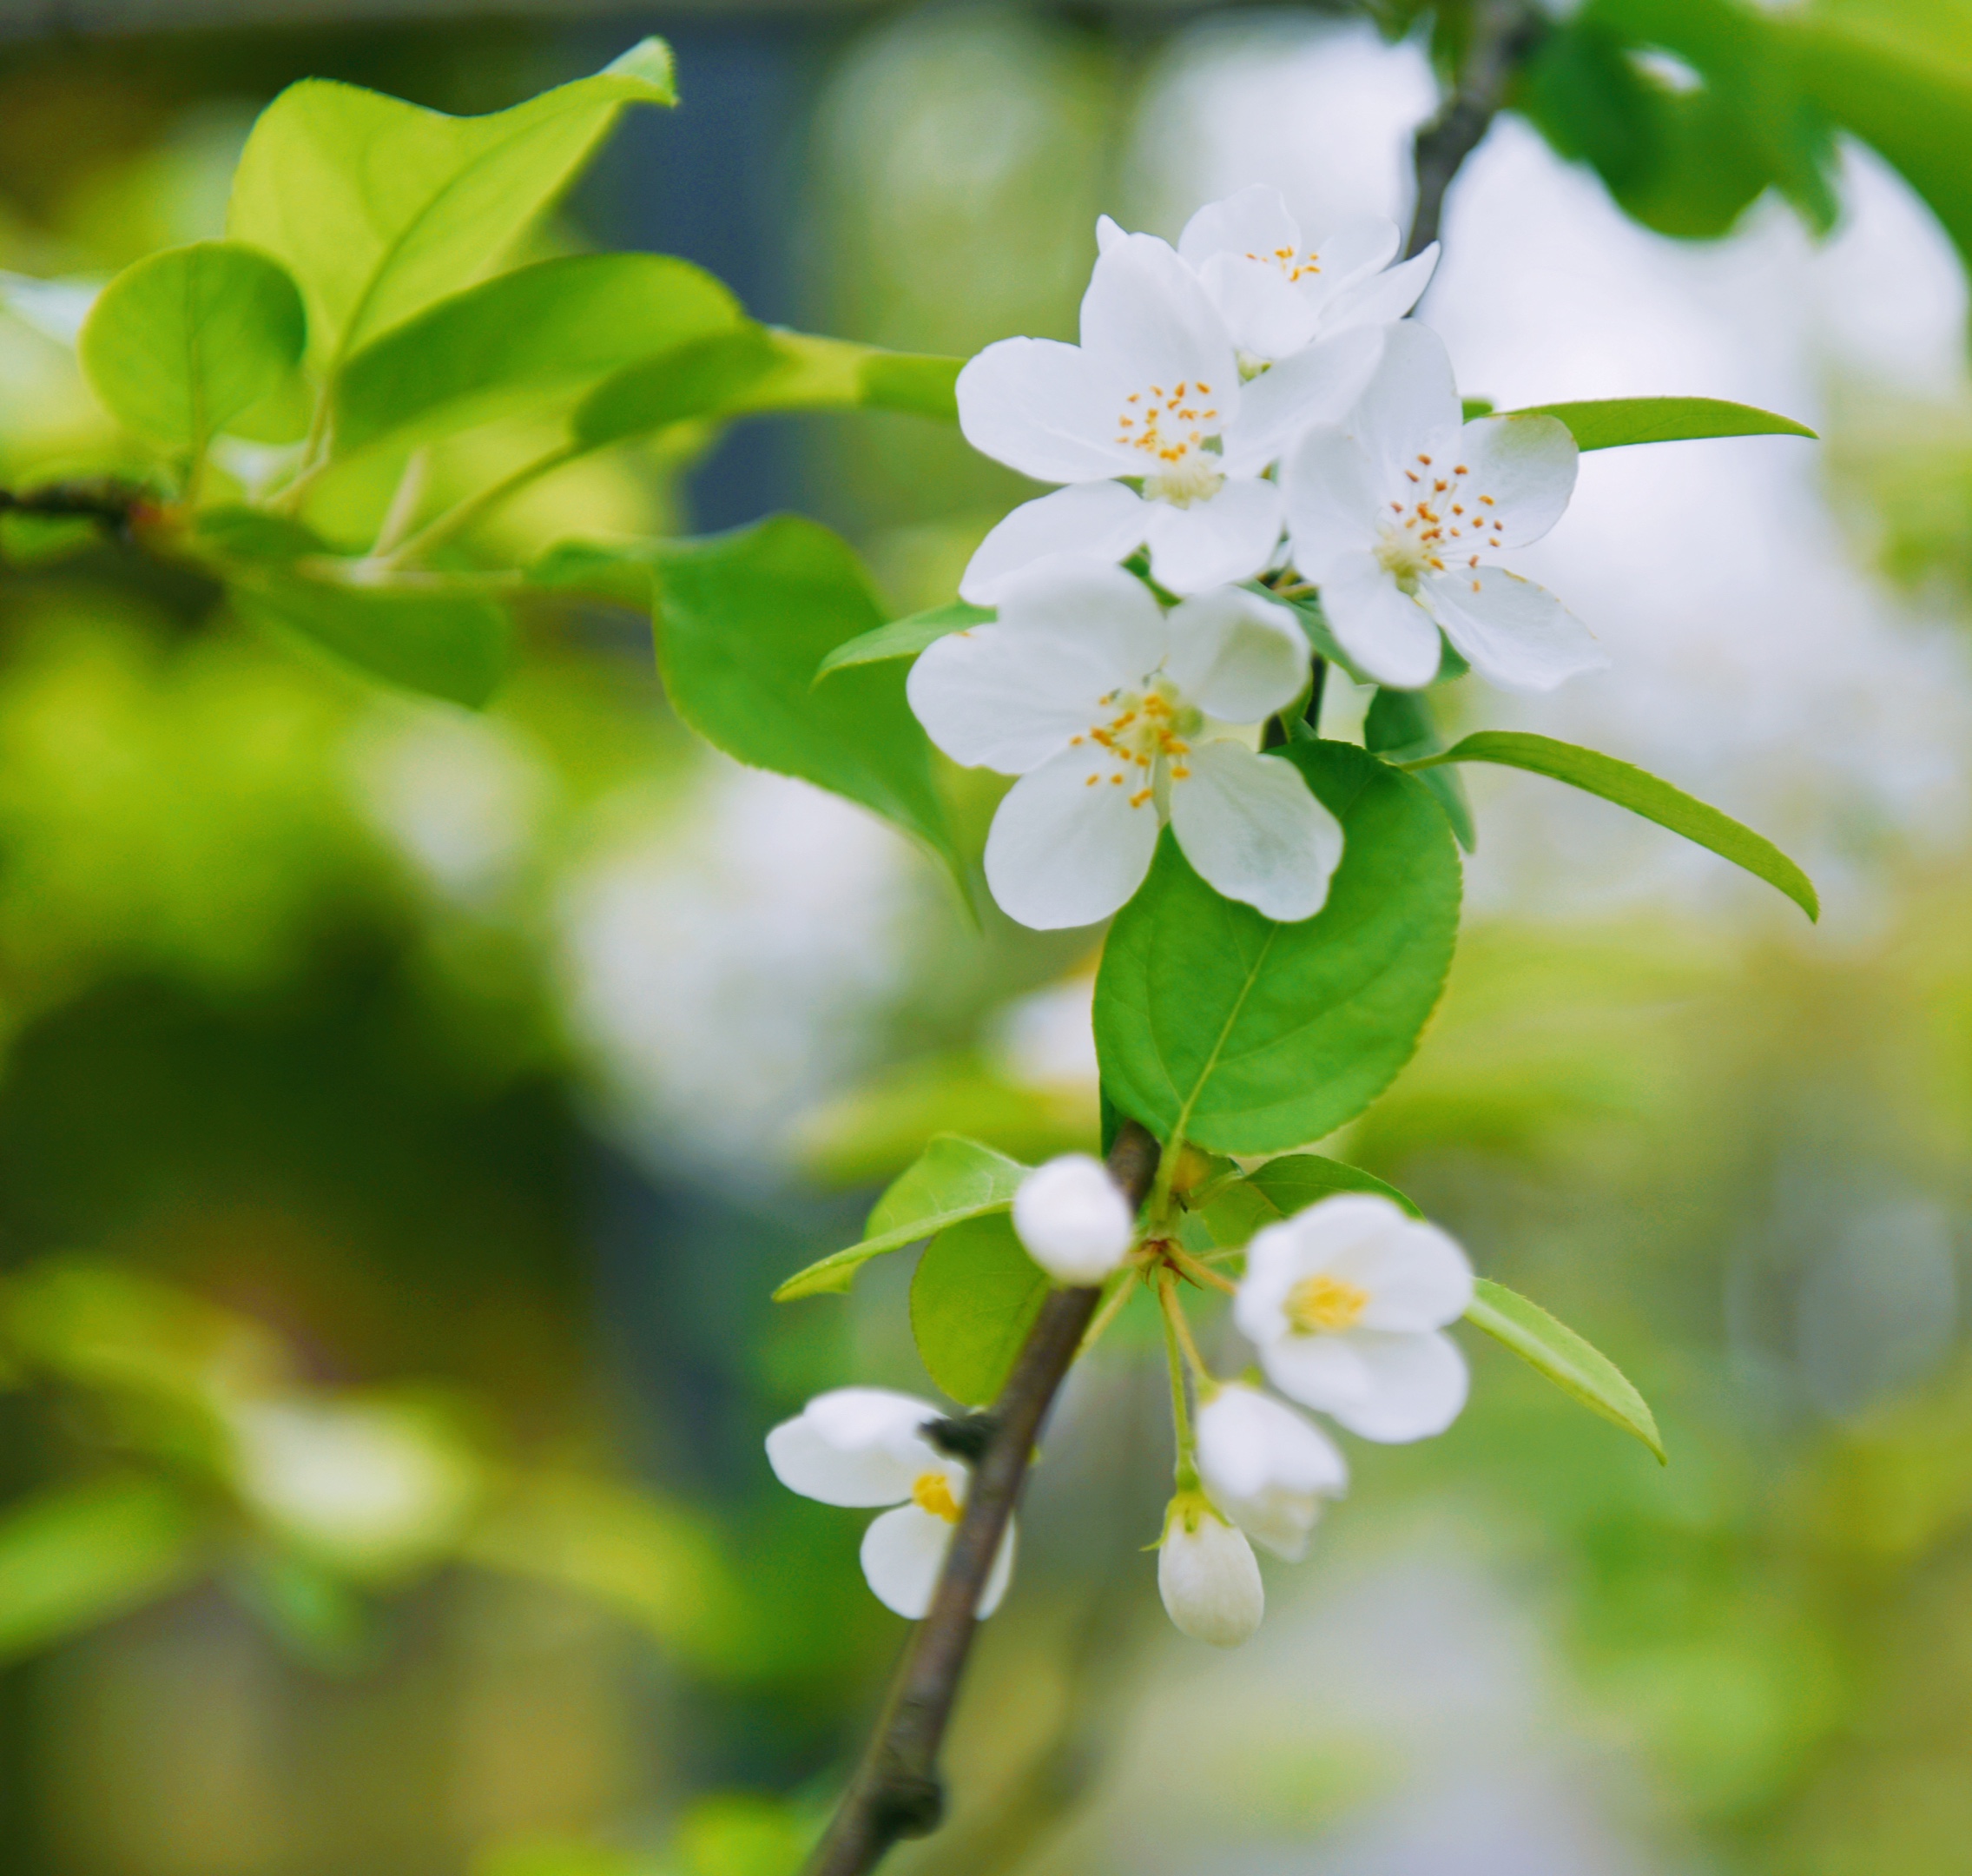 湖北海棠就是一簇簇的落在枝梢,温润如玉,它的花语是温和.